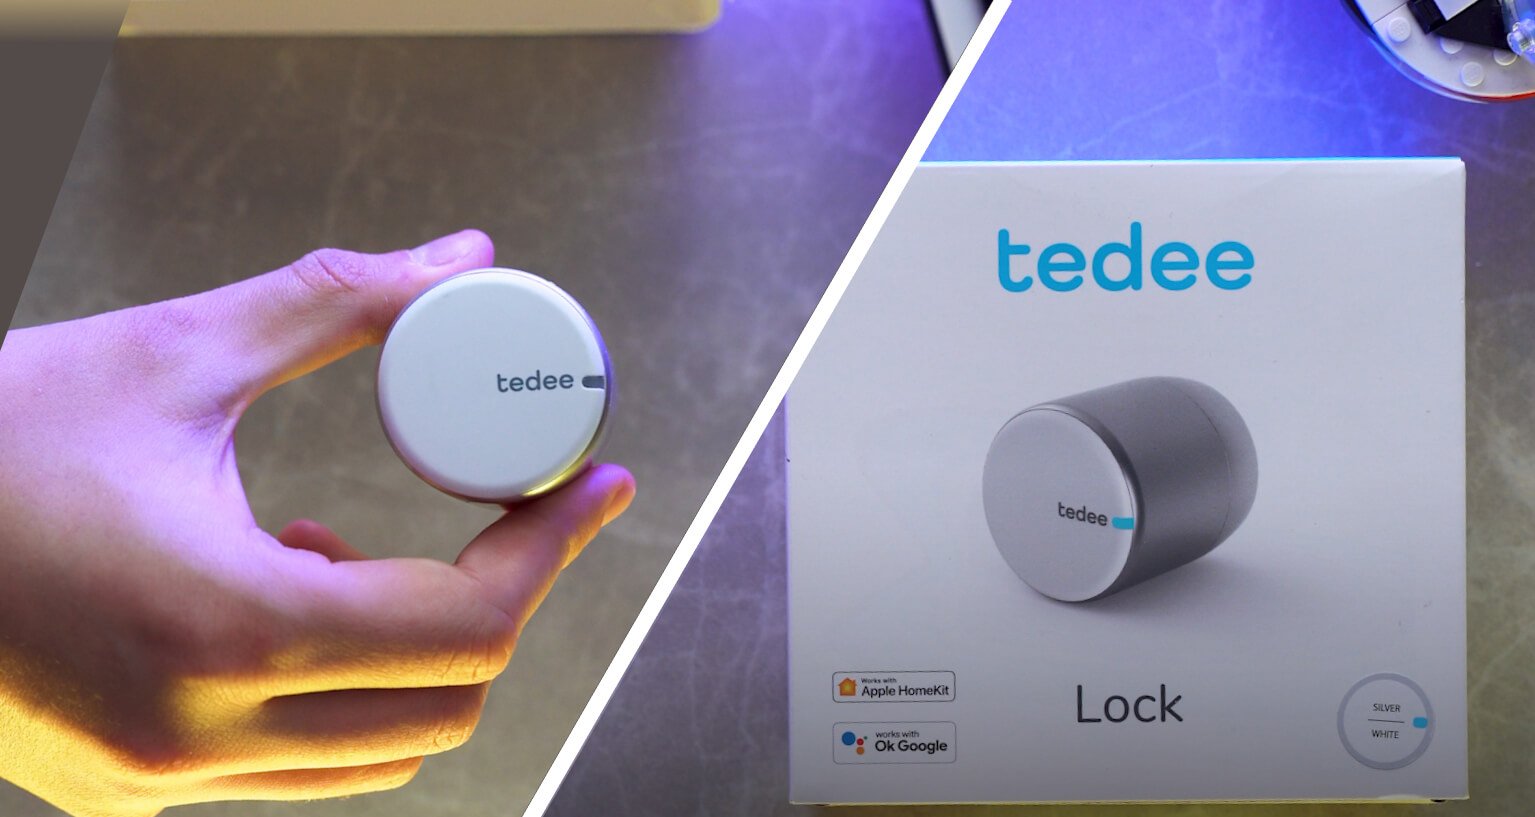 tedee GO – Smart Lock, Silver